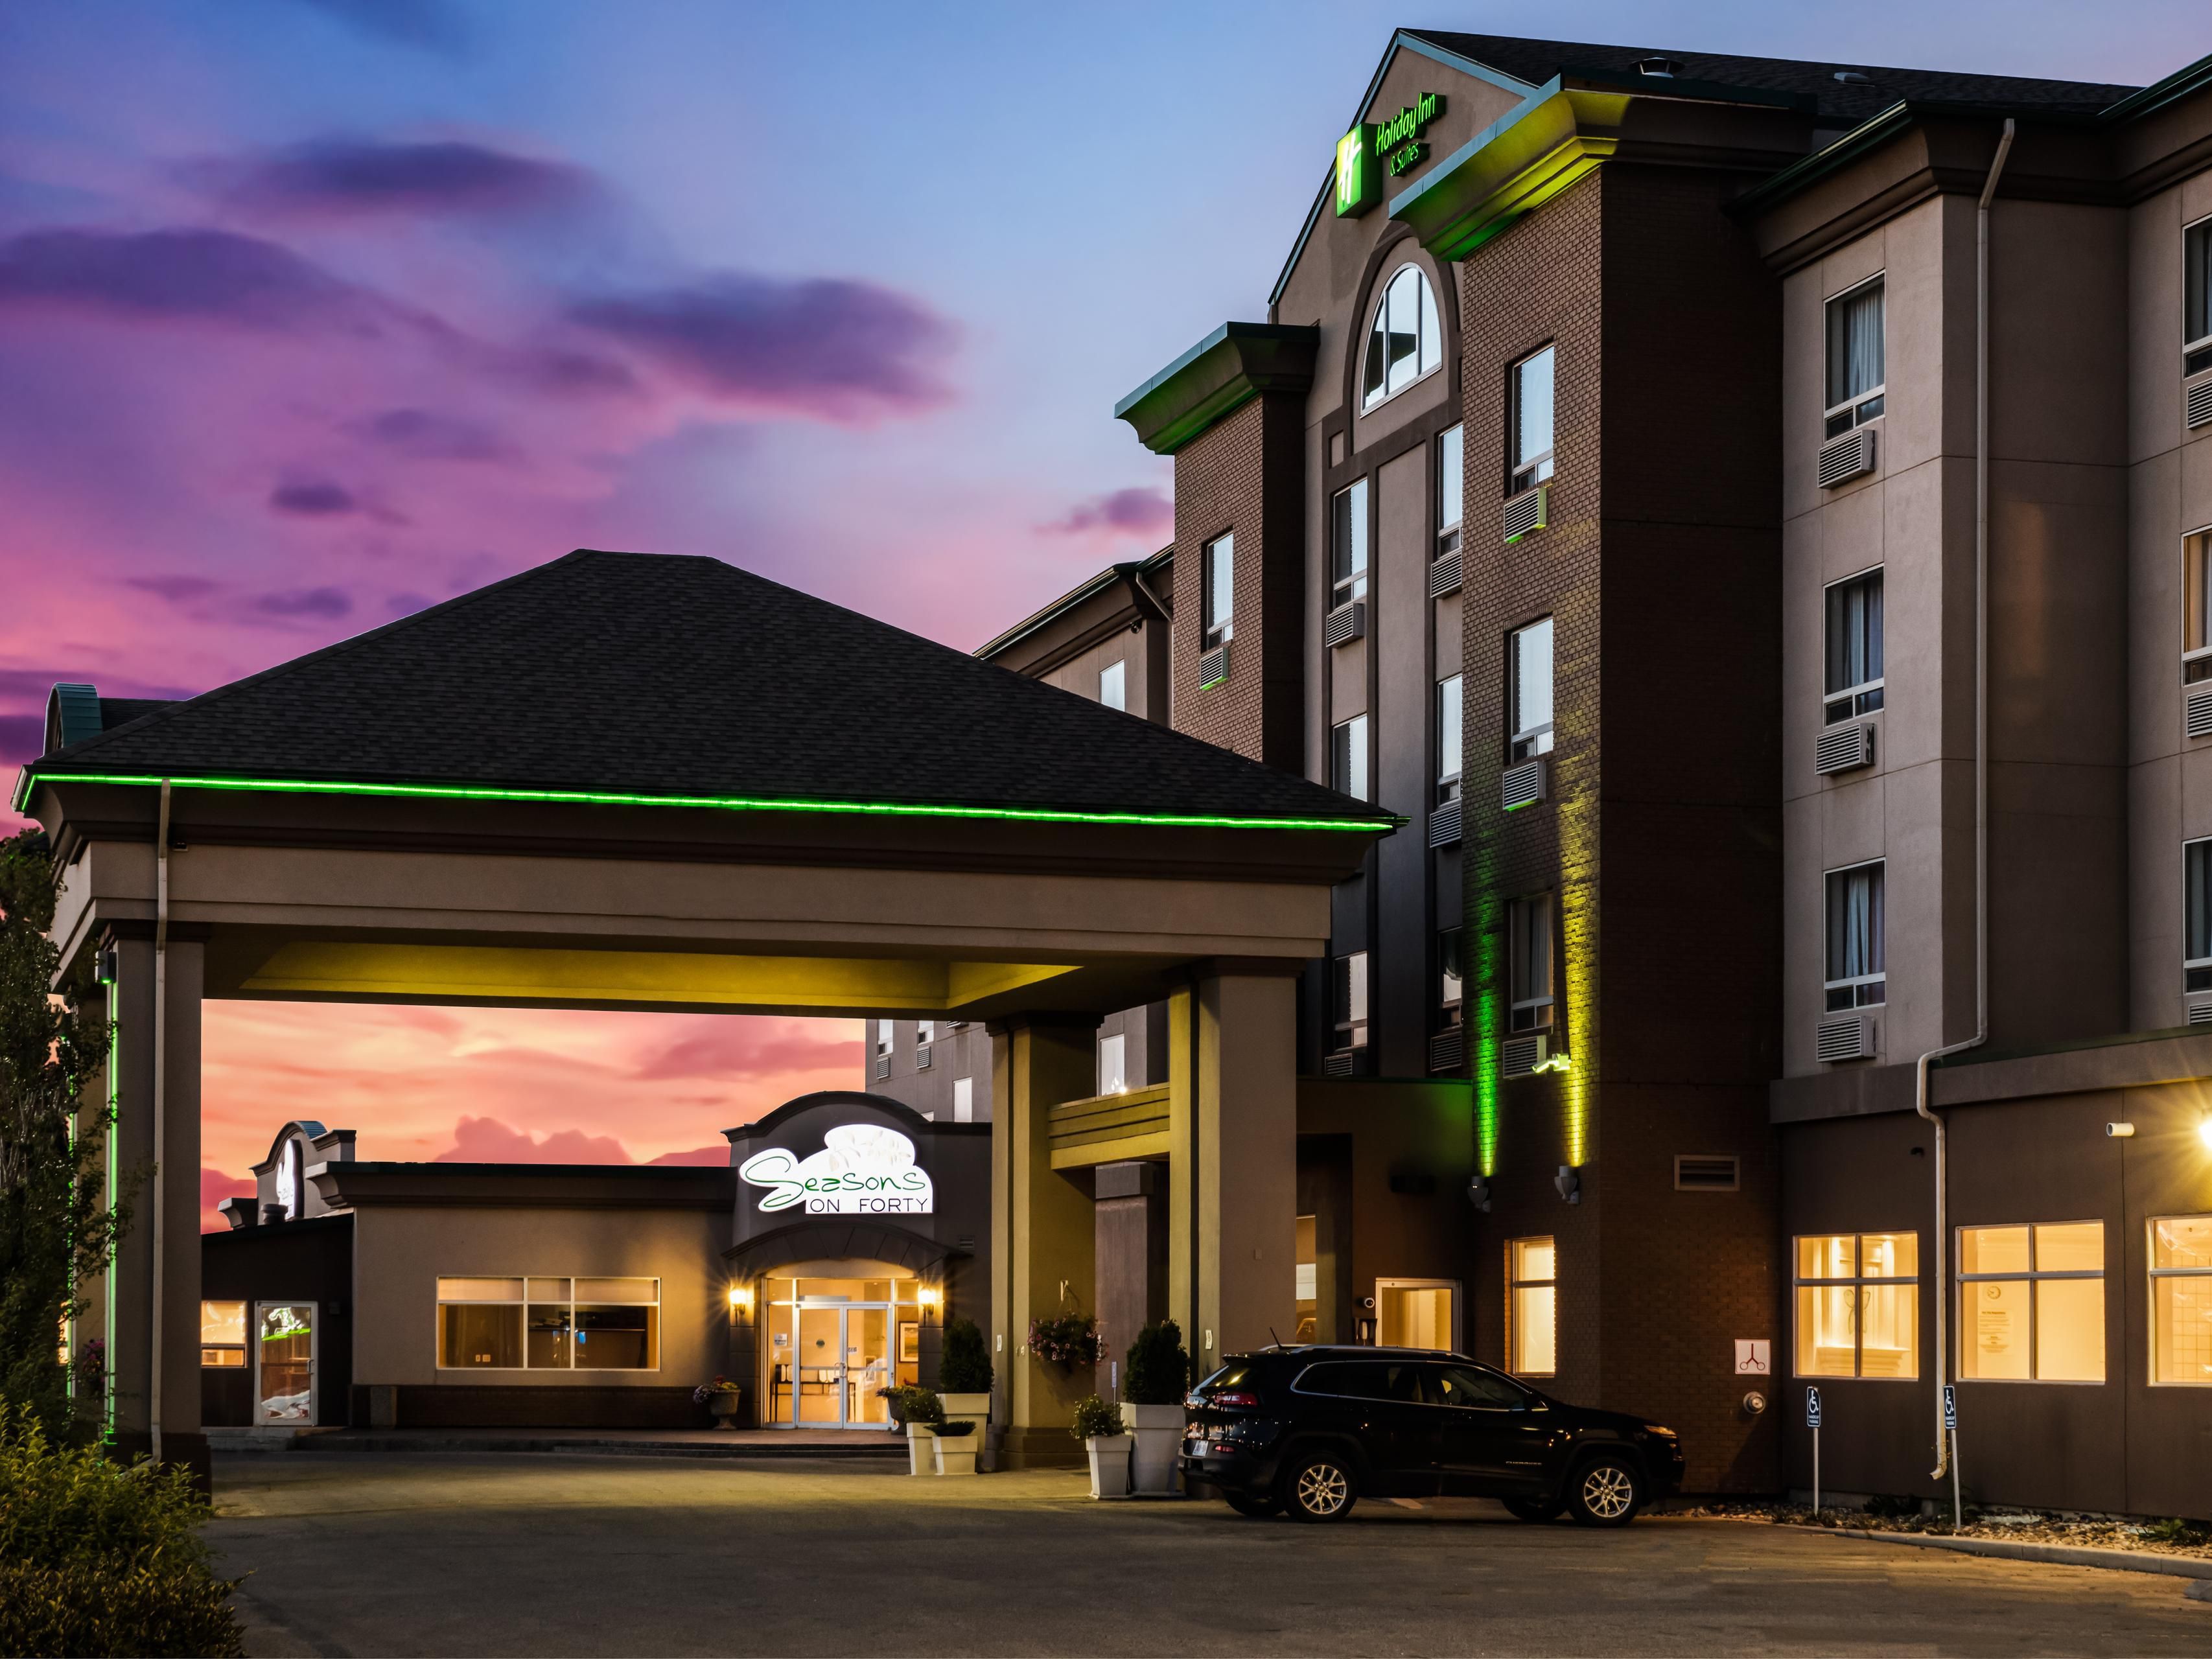 Photo of Holiday Inn & Suites Grande Prairie, Grande Prairie, AB, Canada